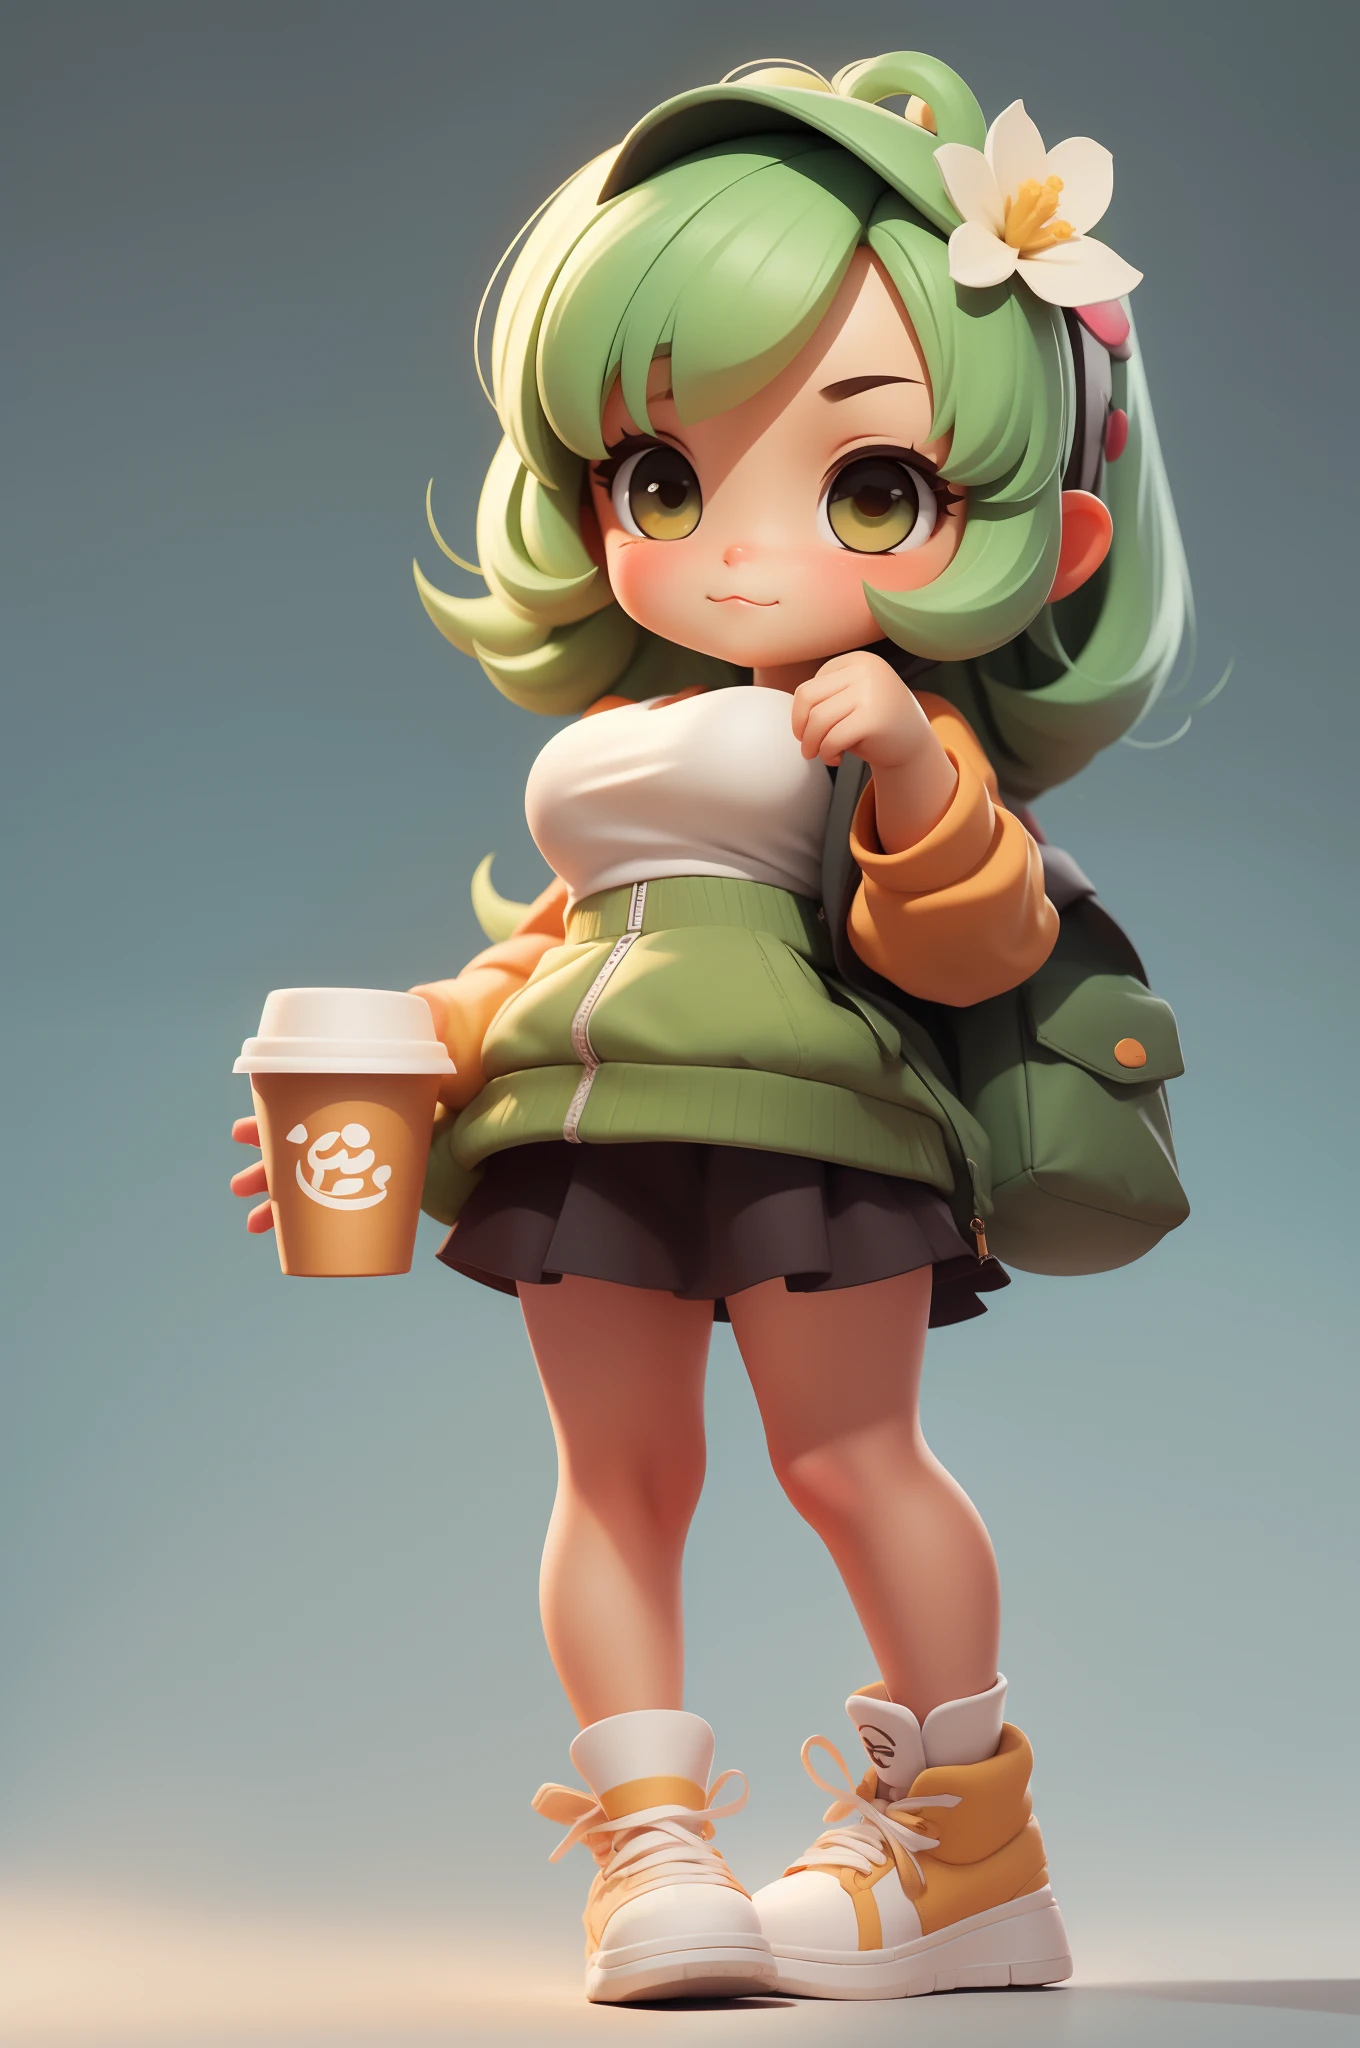 Chica linda sostiene una taza de té con leche, estilo 3DMM, obra maestra, cuerpo completo, fondo sencillo, estilo chibi, verde